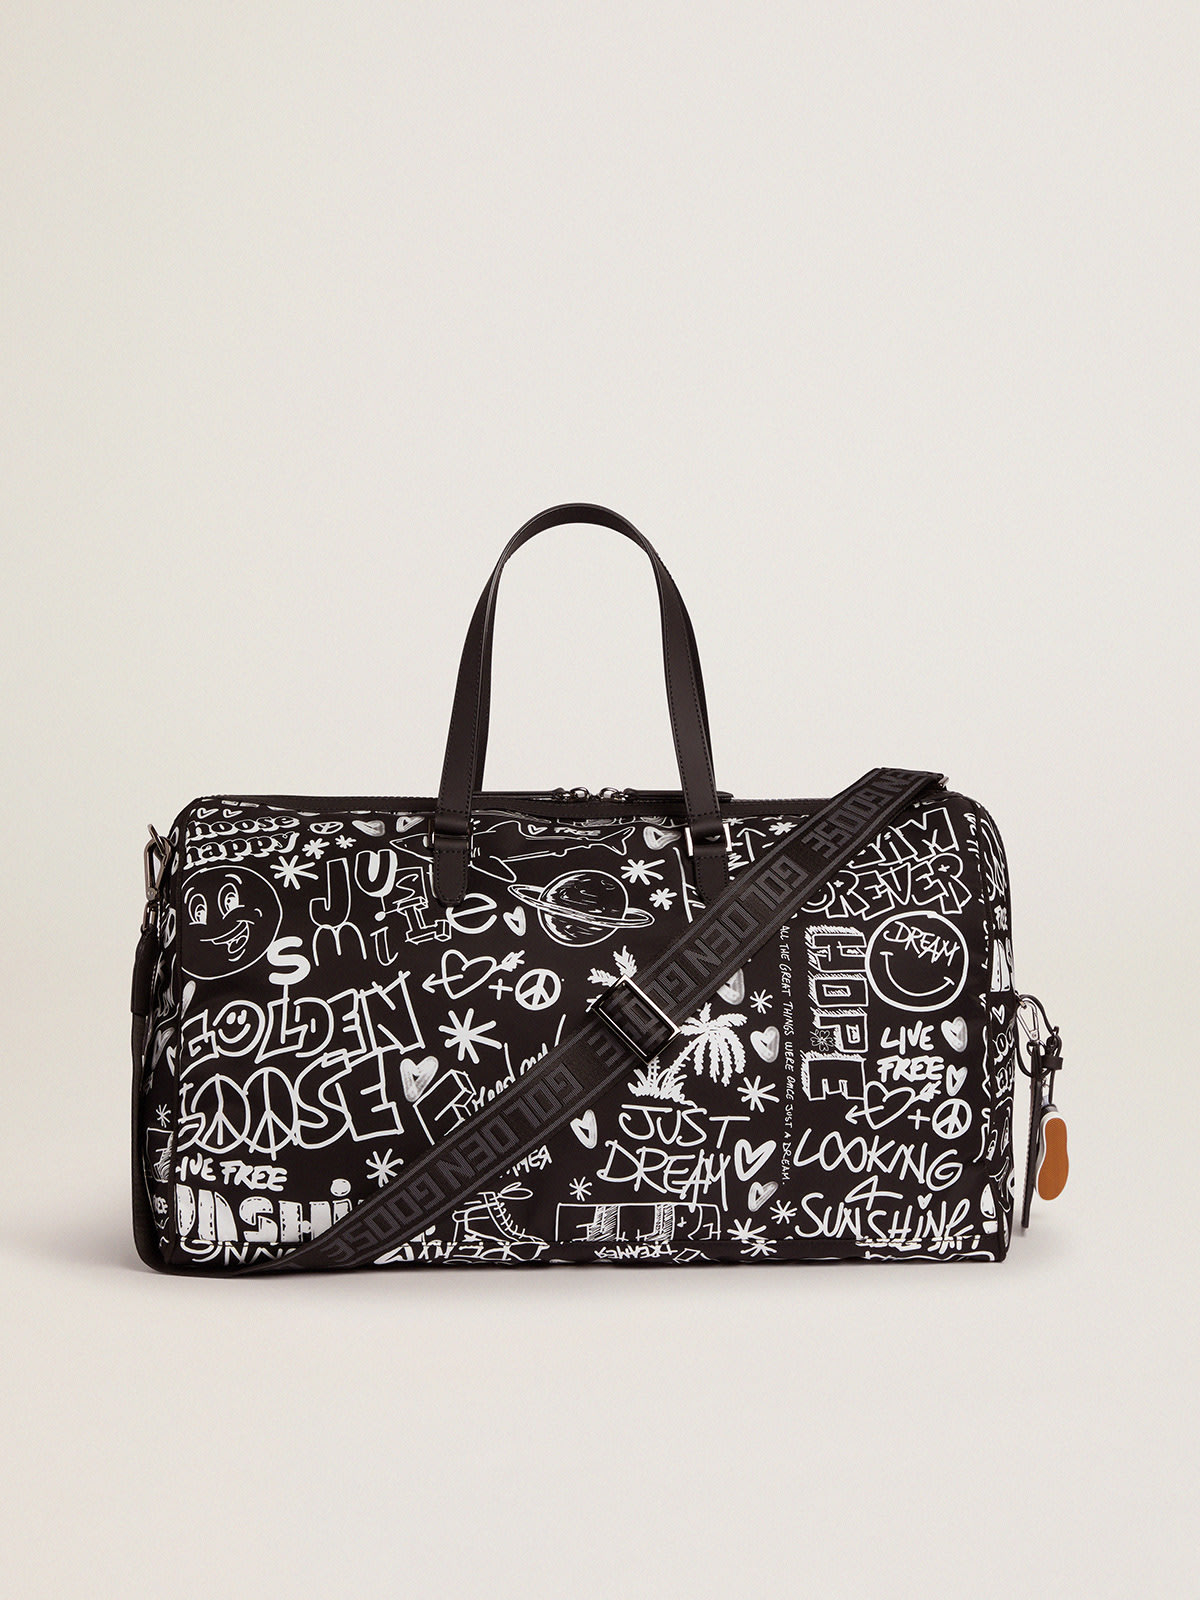 Golden Goose - Duffle Bag Journey en nylon noir avec décorations blanches contrastées in 